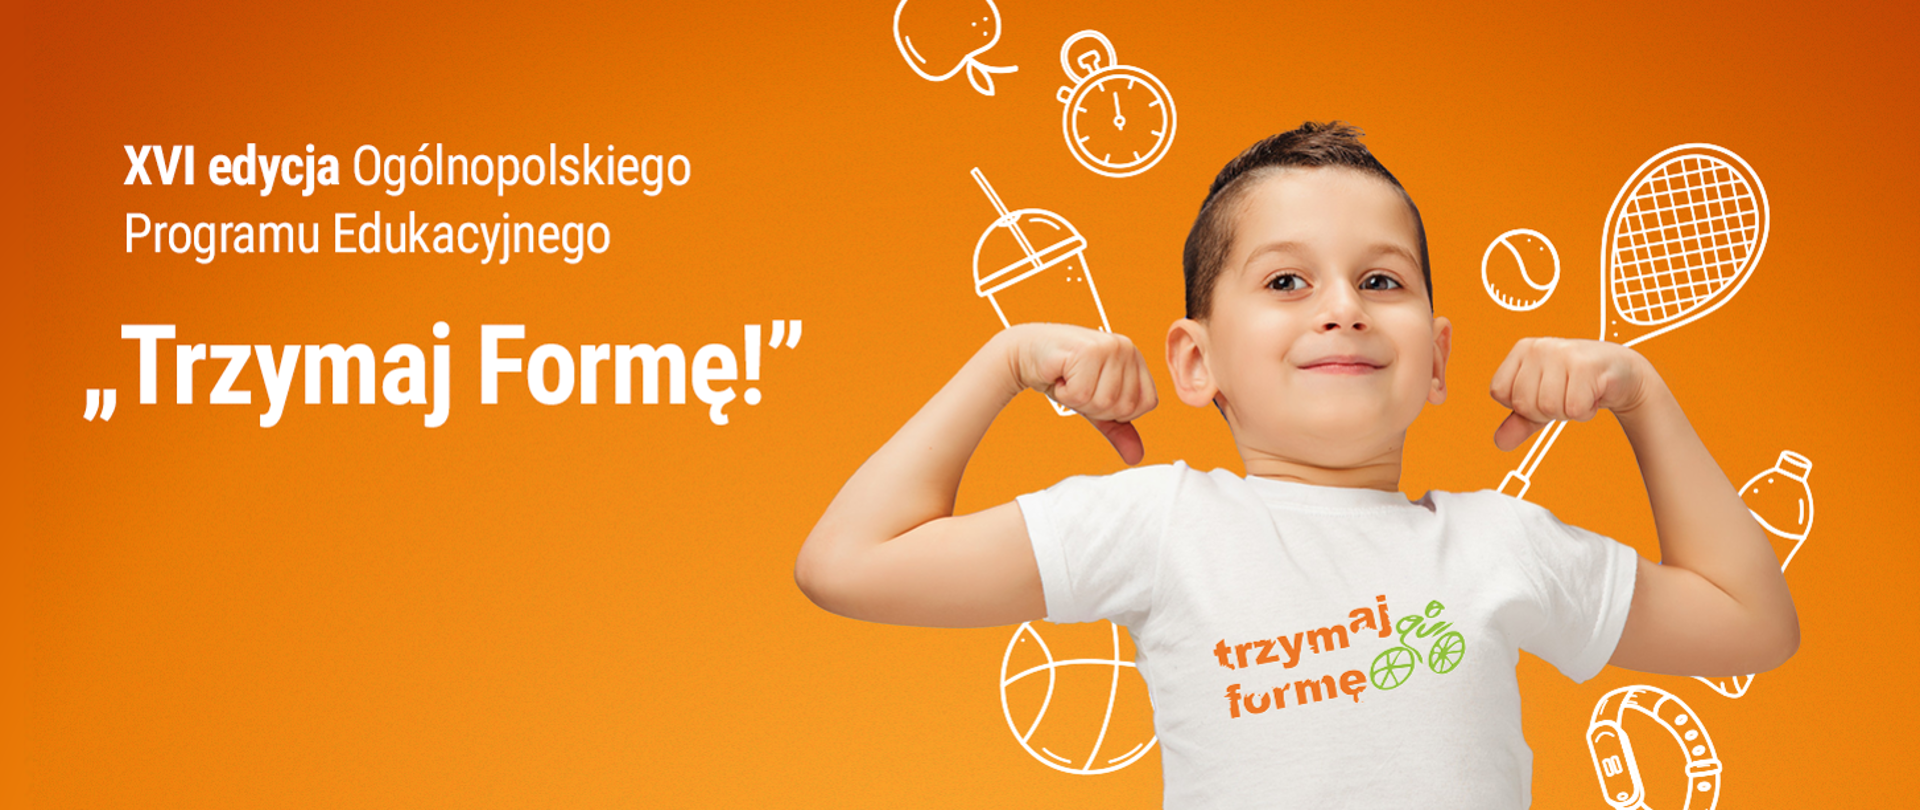 Banner w kolorze pomarańczowym z napisem "Trzymaj Formę!" XVI edycja Ogólnopolskiego Programu Edukacyjnego, po prawej stronie chłopak w białej koszulce z logo programu